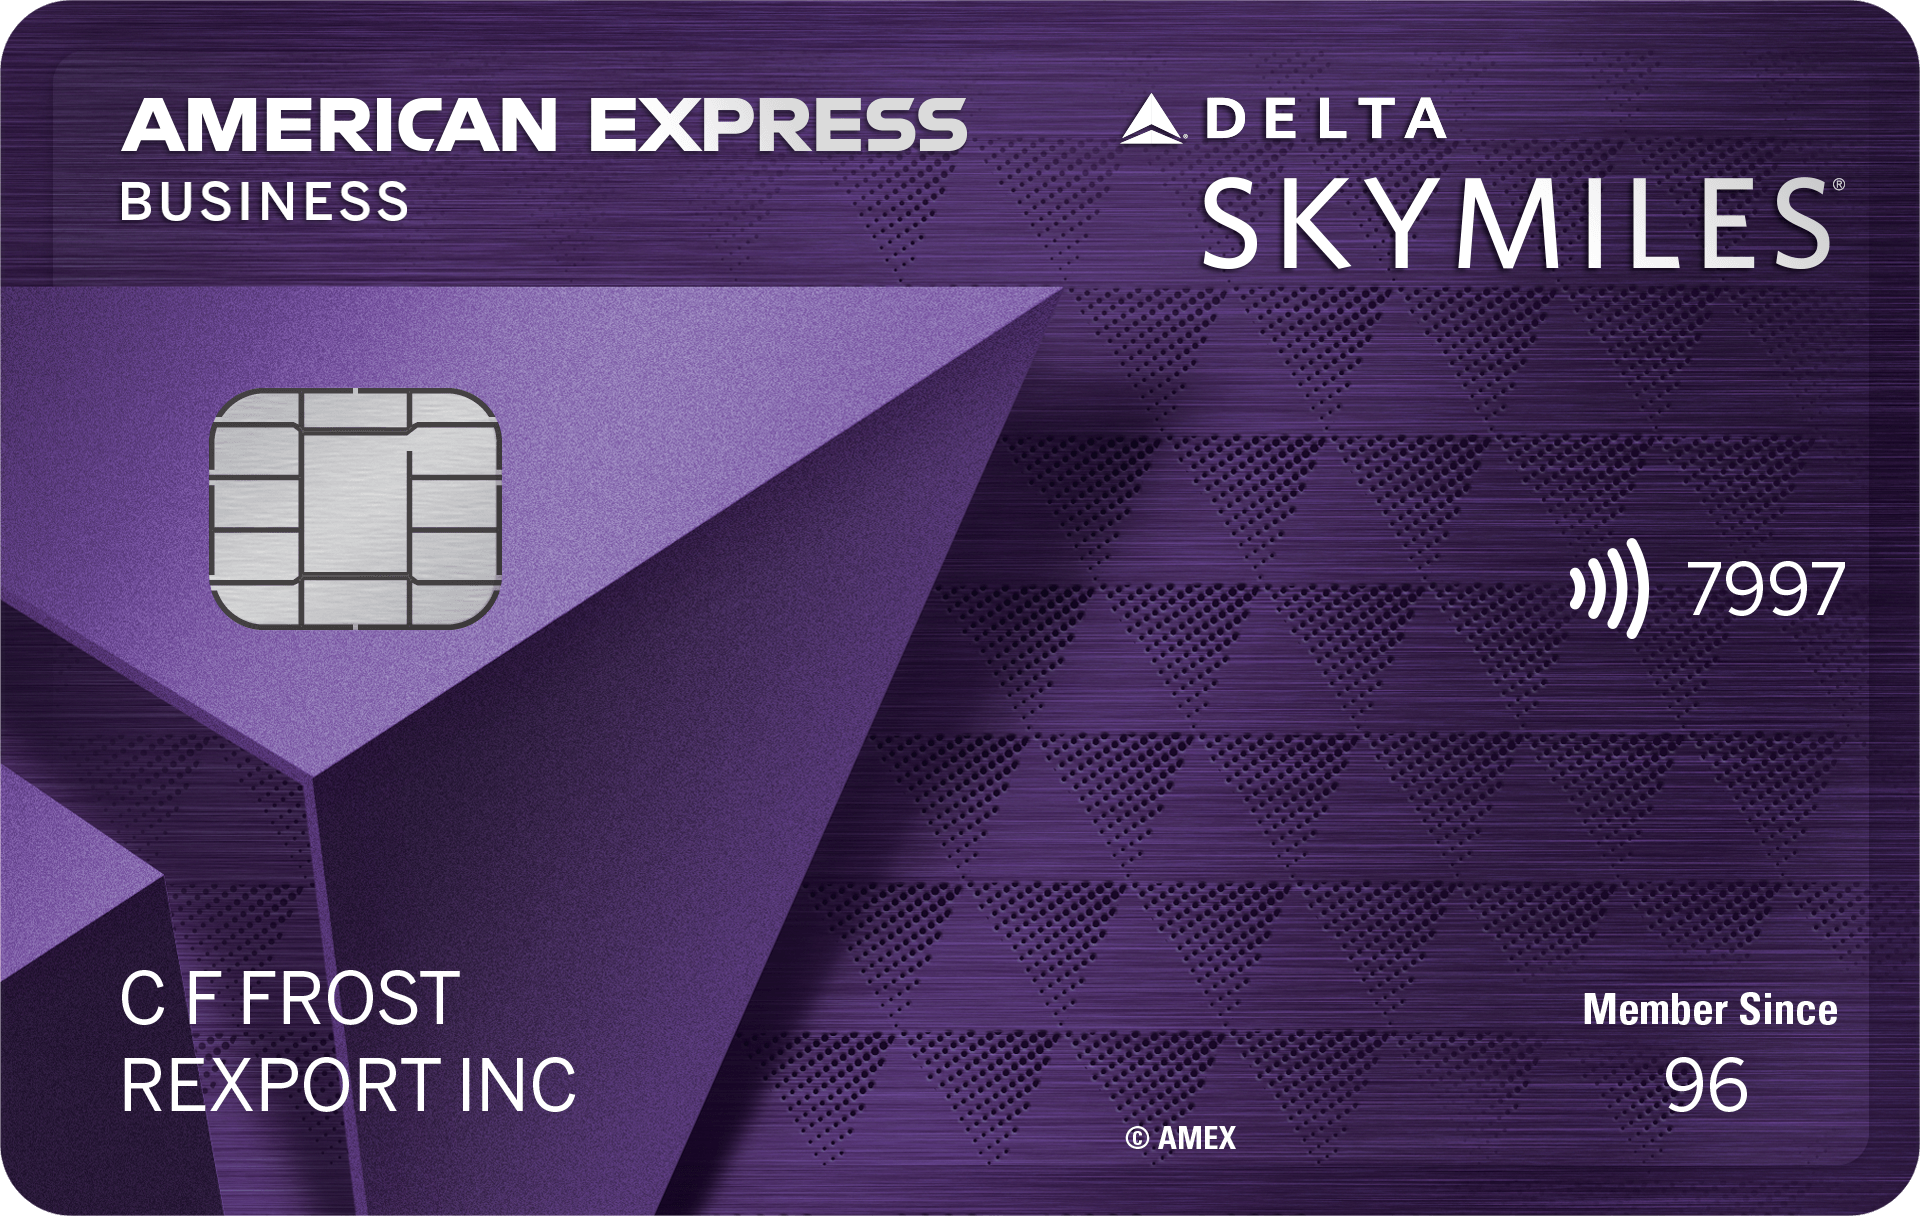 express next credit card